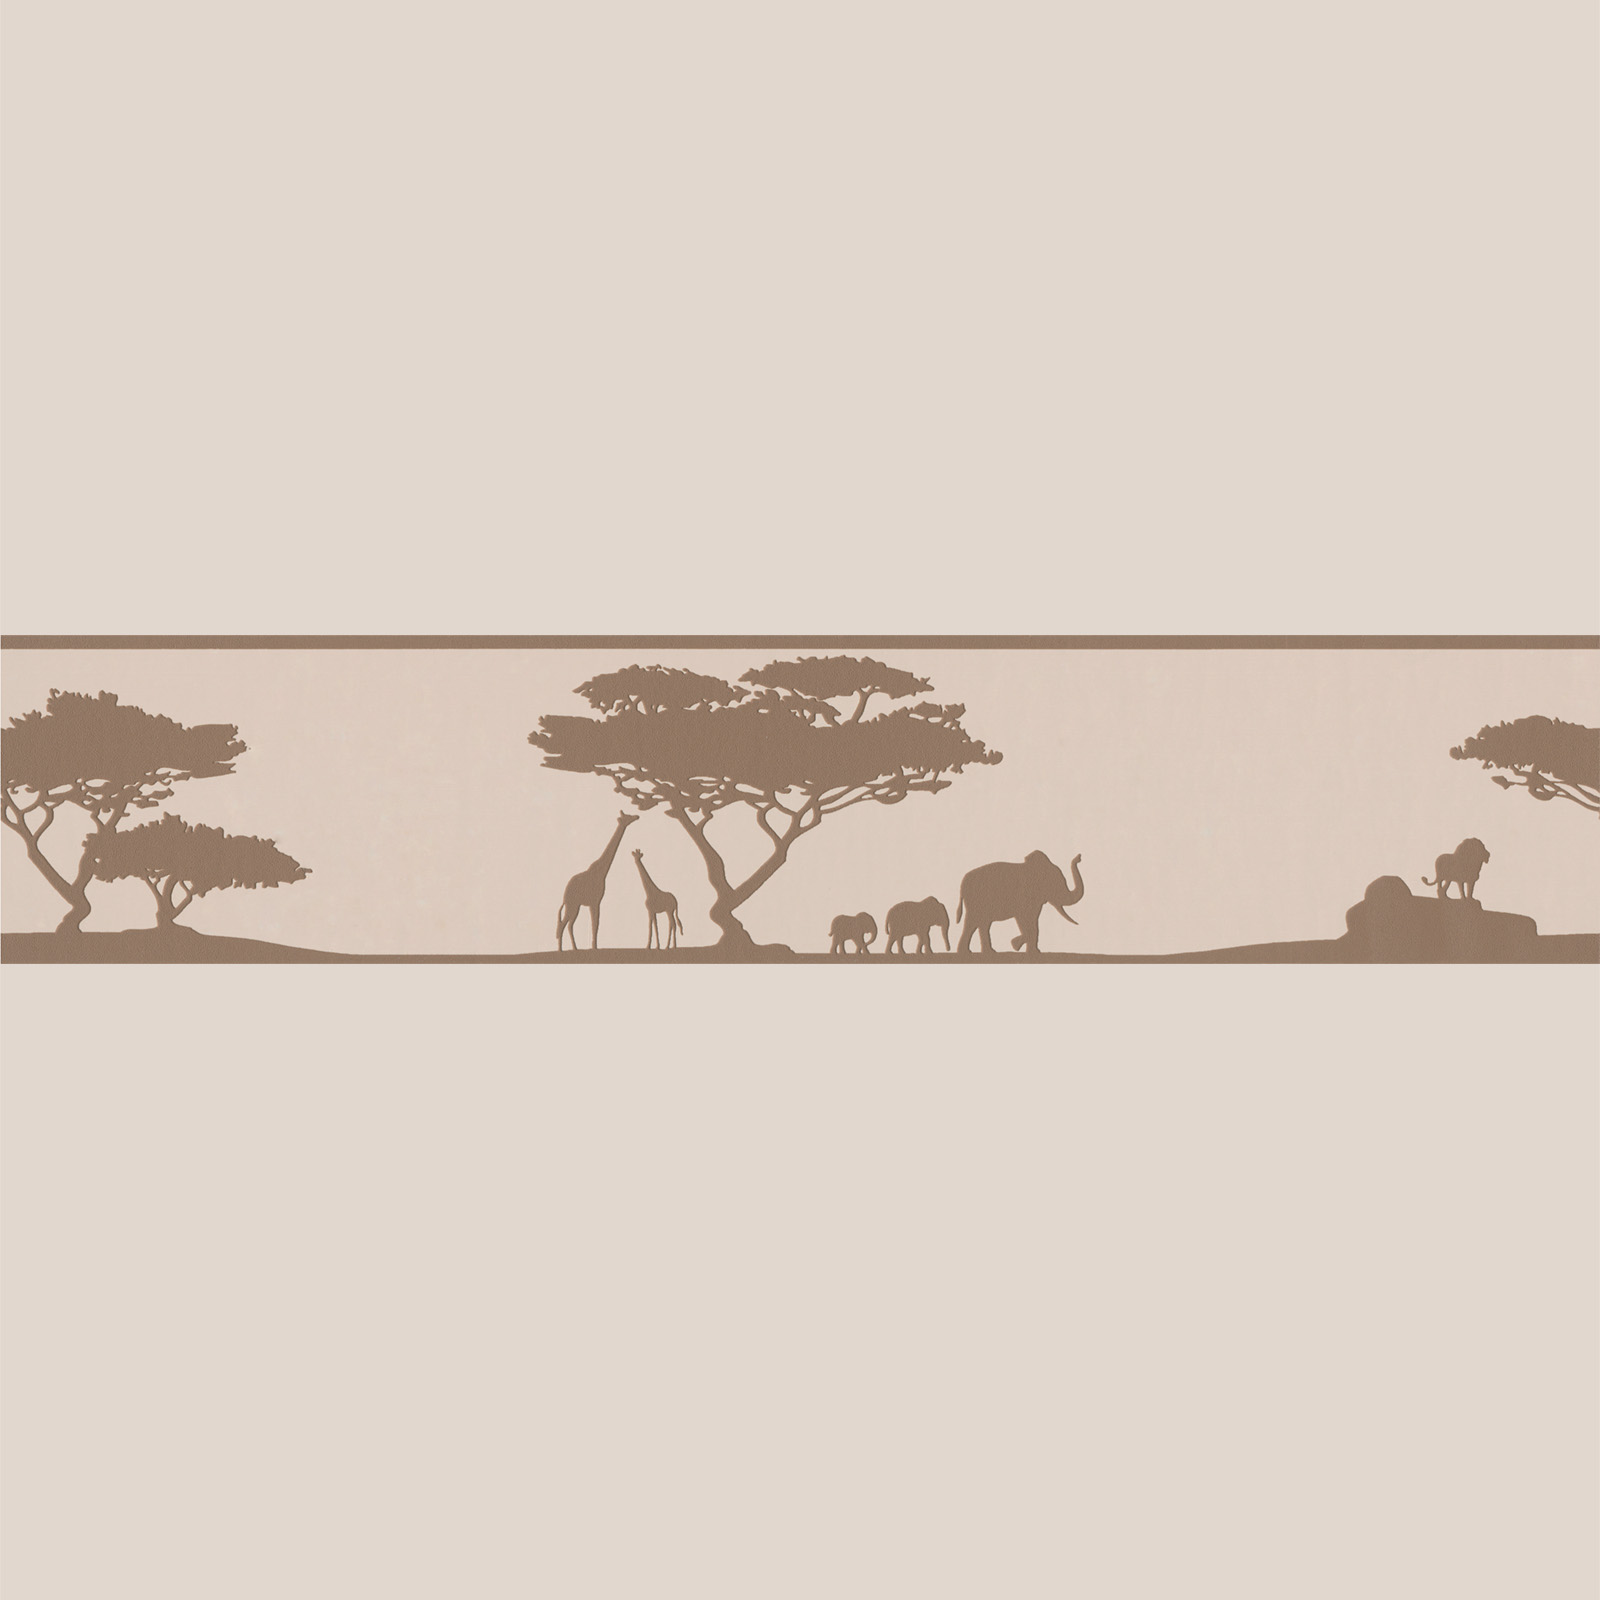         Border Africa motif savannah animals - Beige, Brown
    